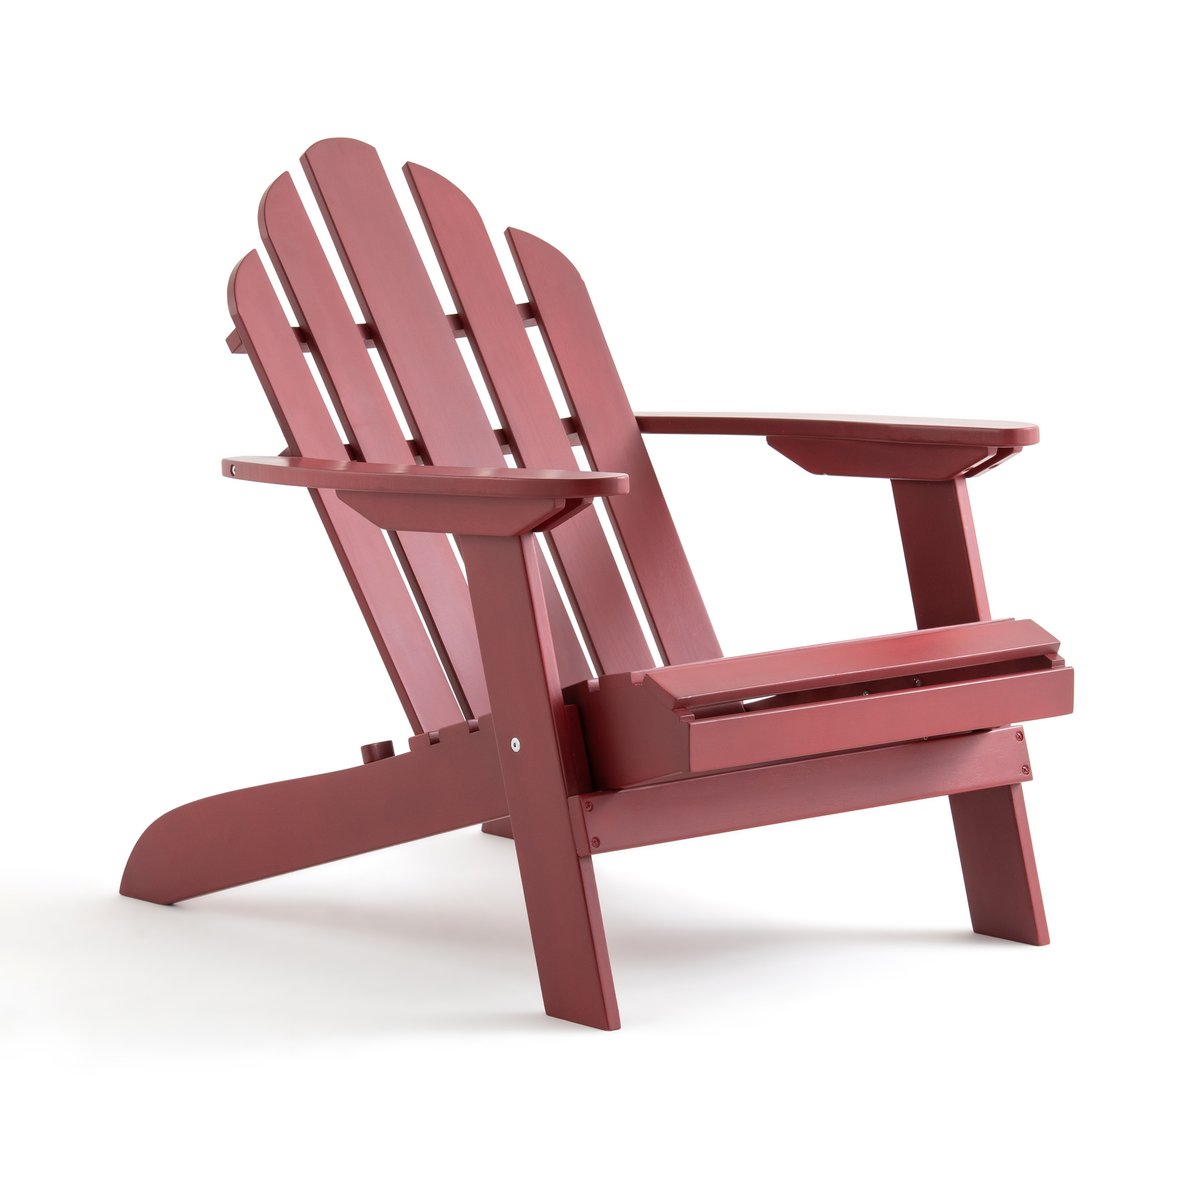 Кресло для сада Thodore в стиле Адирондак единый размер красный кресло для сада thodore в стиле adirondak единый размер каштановый